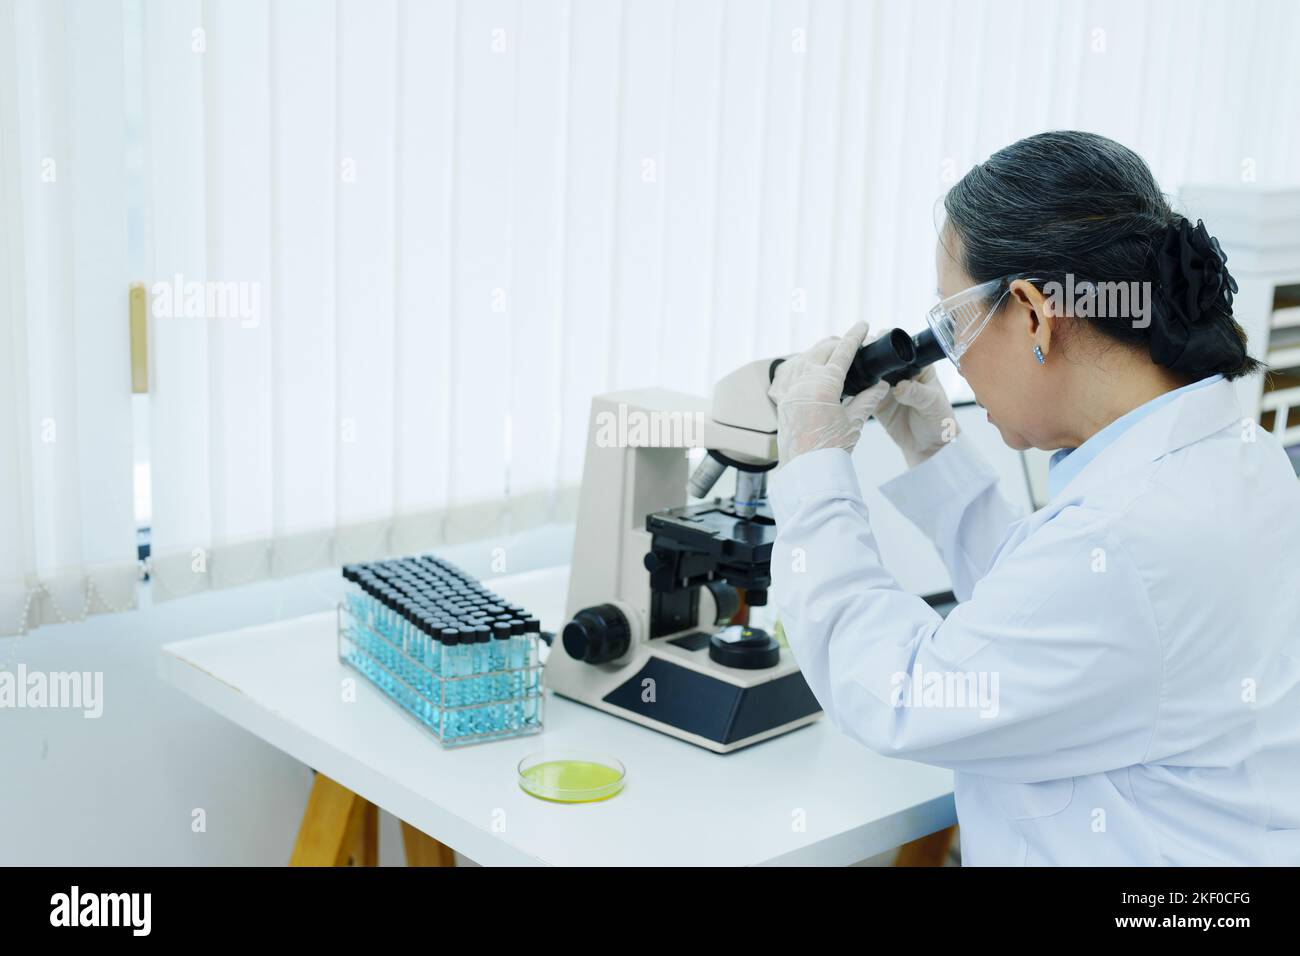 Wissenschaftler analysieren chemische Proben und diskutieren technologische Innovationen. Stockfoto